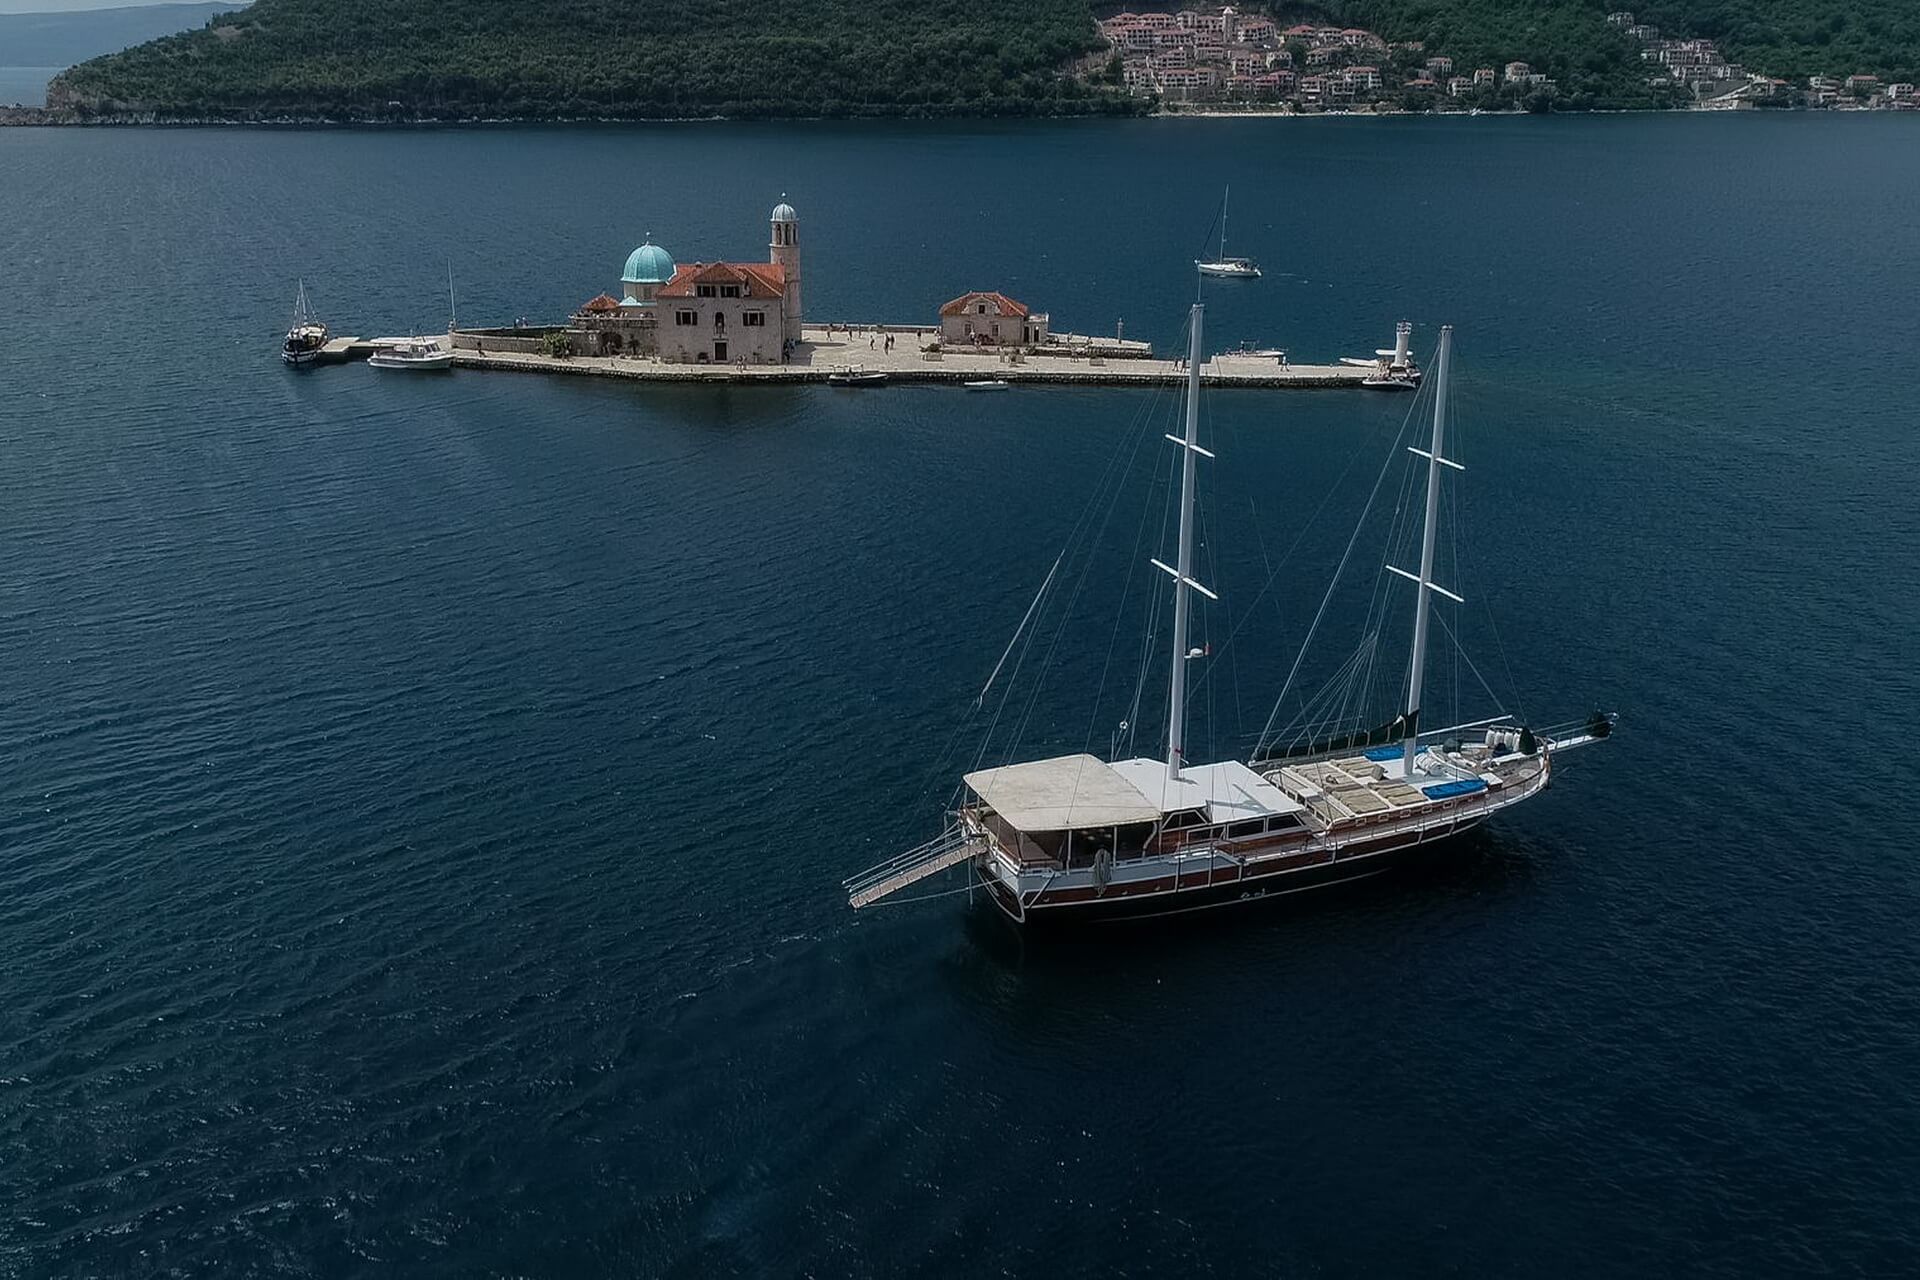 dm yachting montenegro